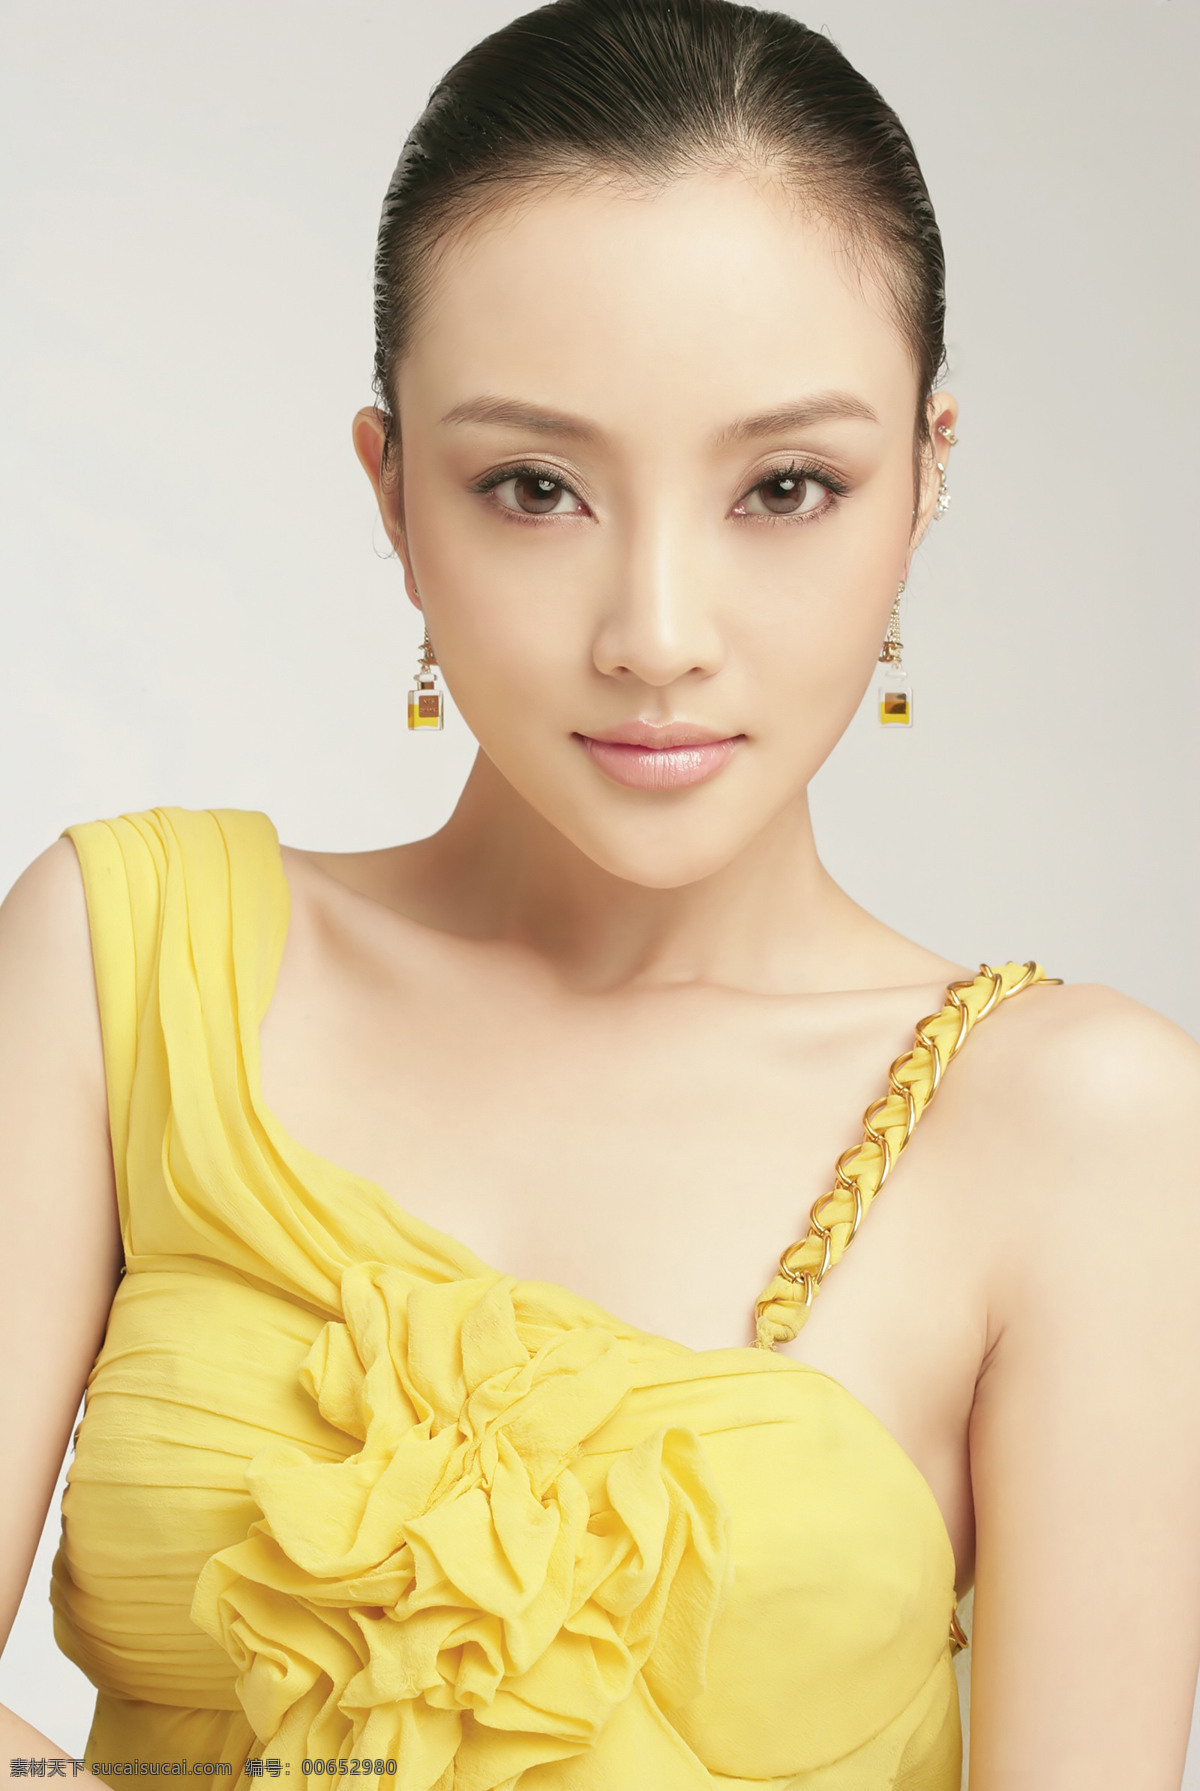 李小璐 黄色 吊带 耳环 妆面 化妆 美女 明星 演员 妆面摄影 女性女人 人物图库